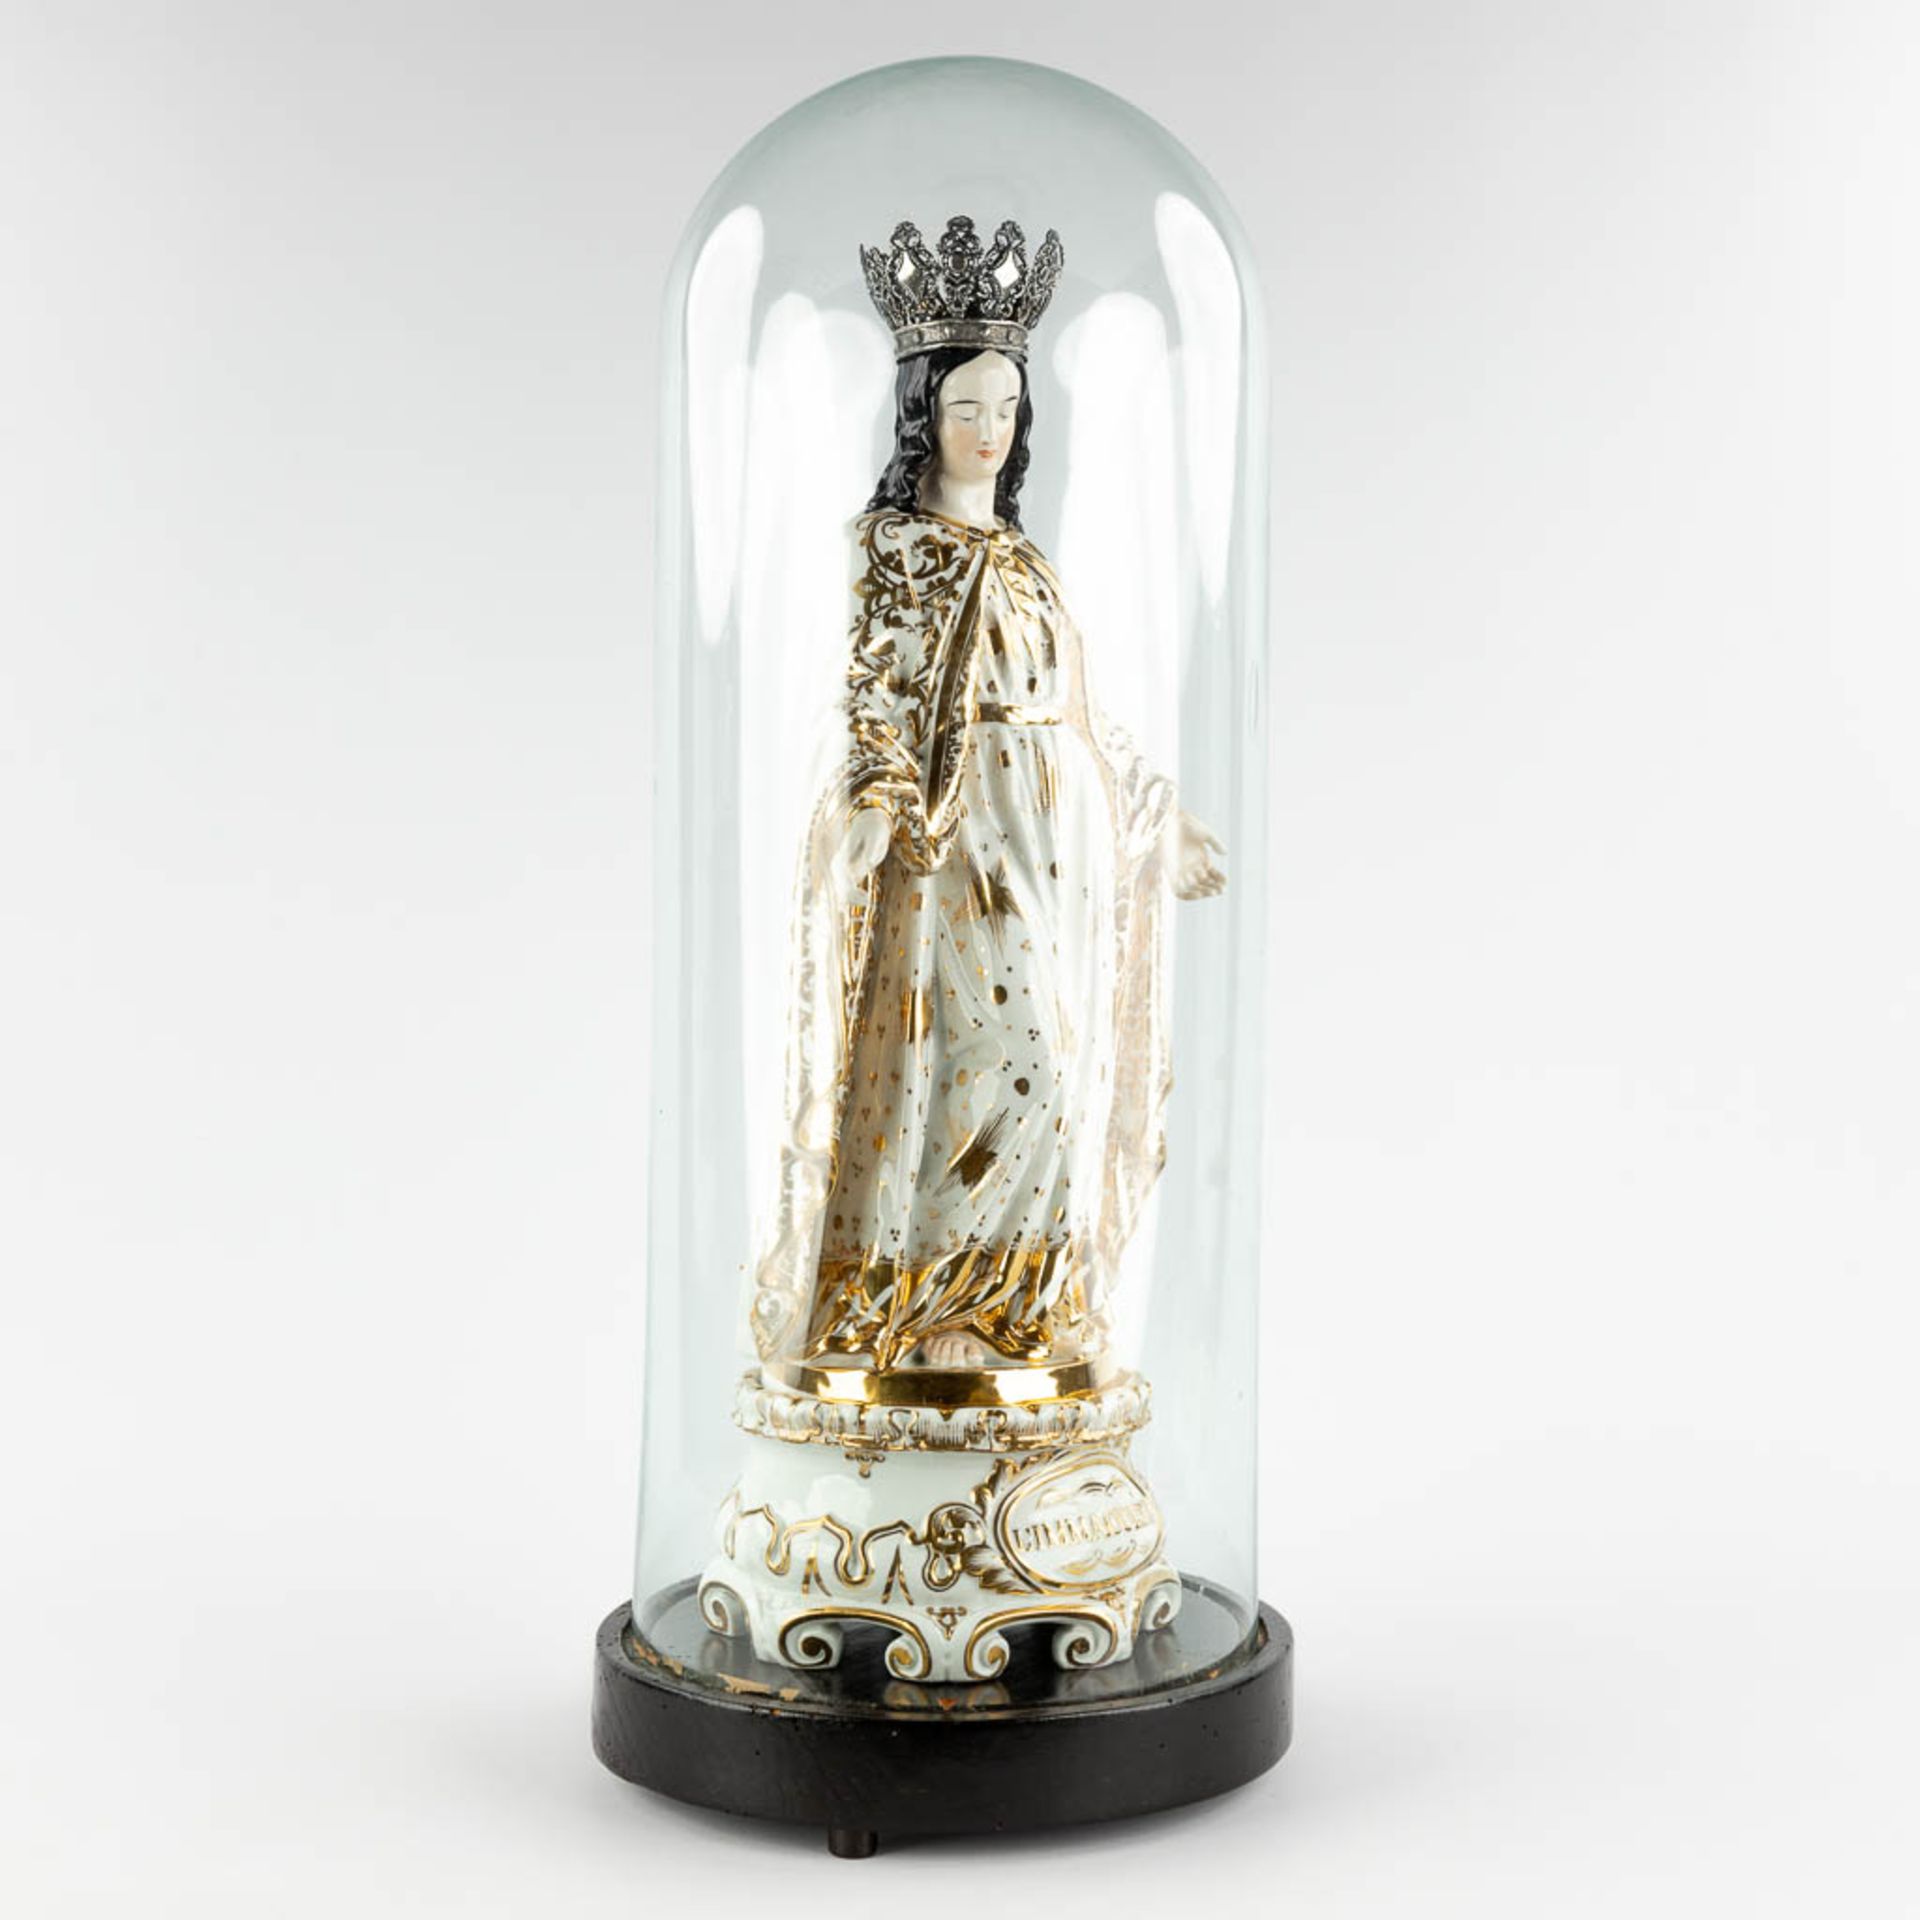 a large figurine of Madonna standing under a glass dome. Vieux Bruxelles porcelain. 19th C. (W:23 x  - Bild 3 aus 11